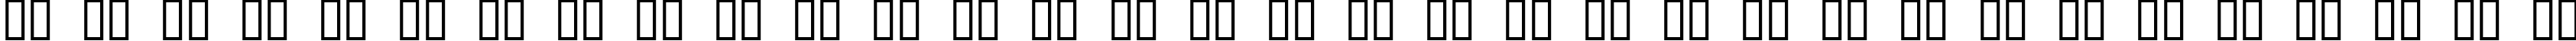 Пример написания русского алфавита шрифтом YonderRecoil